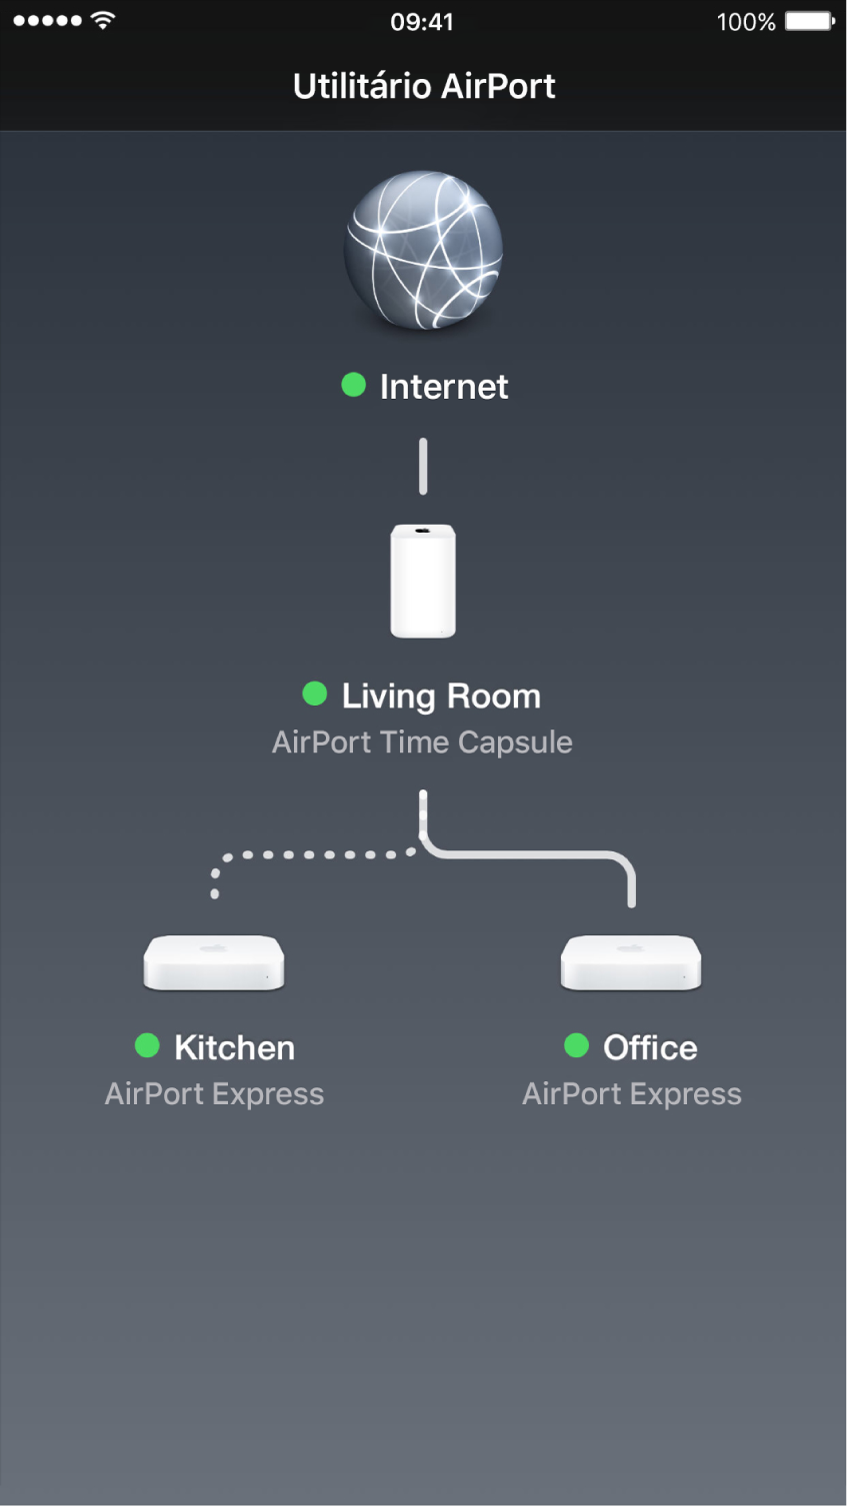 A visão geral gráfica no Utilitário AirPort para iOS.